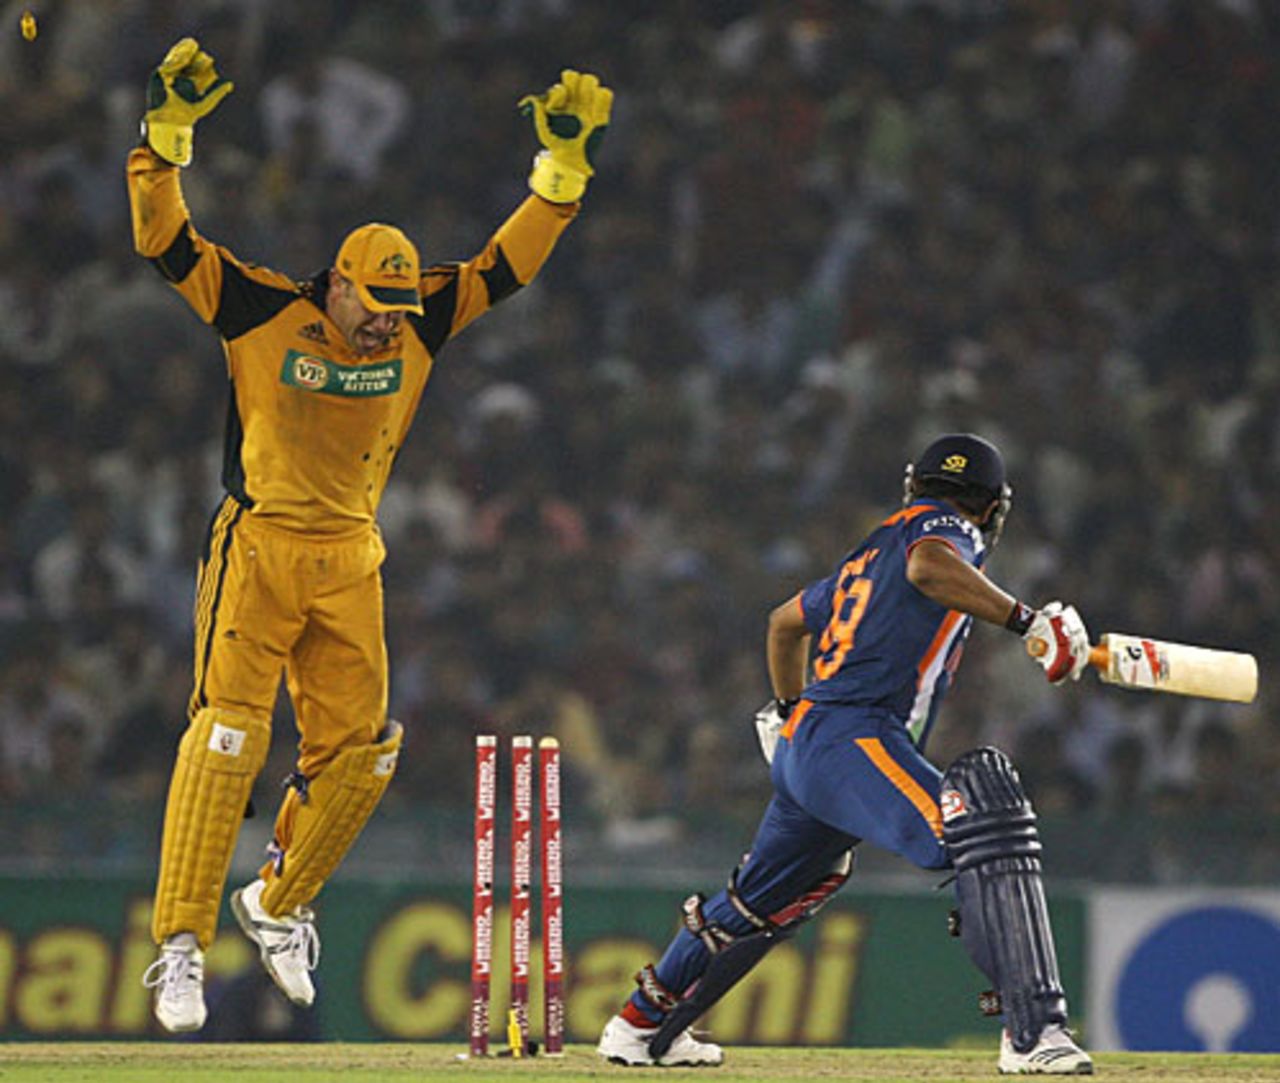 Suresh Raina is undone by Nathan Hauritz, India v Australia, 4th ODI, Mohali, November 2, 2009